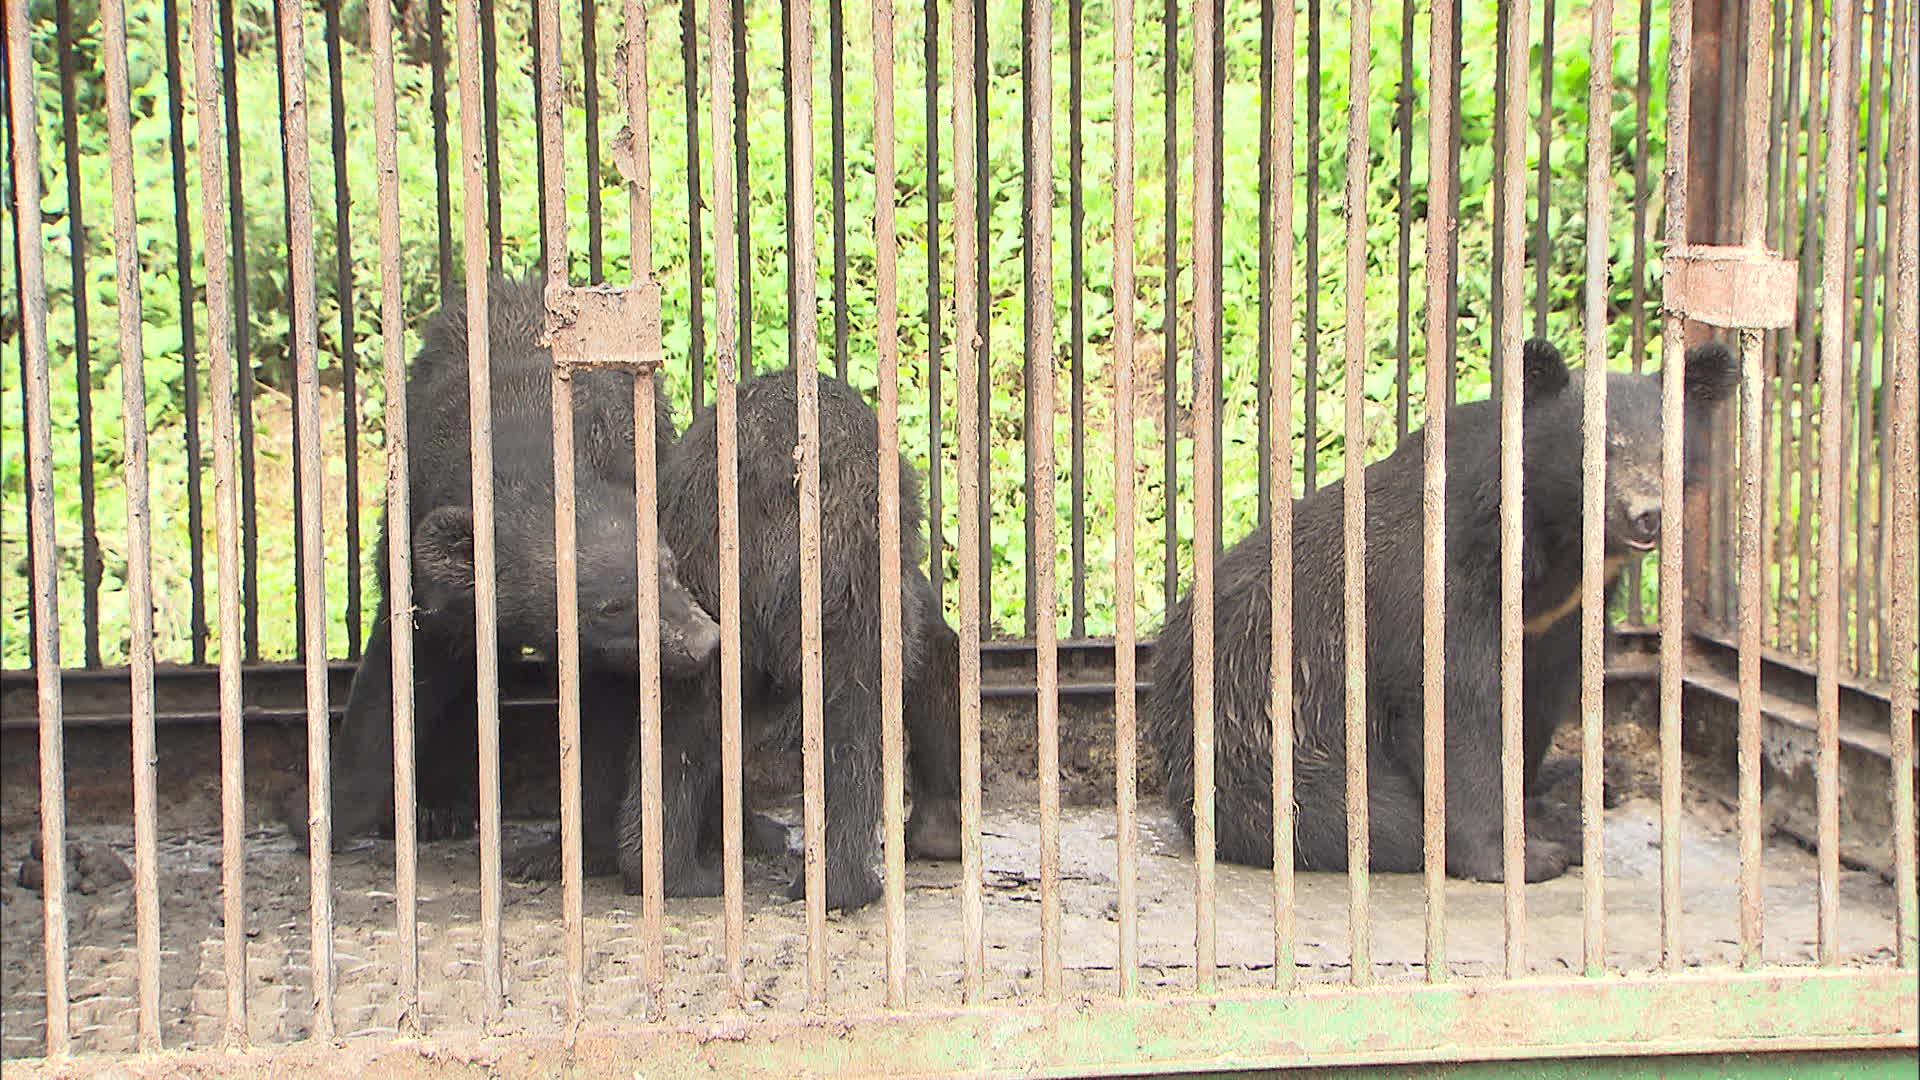 해당 농장에서 사육 중인 곰. 체구를 볼 때 어린 개체로 추정된다.